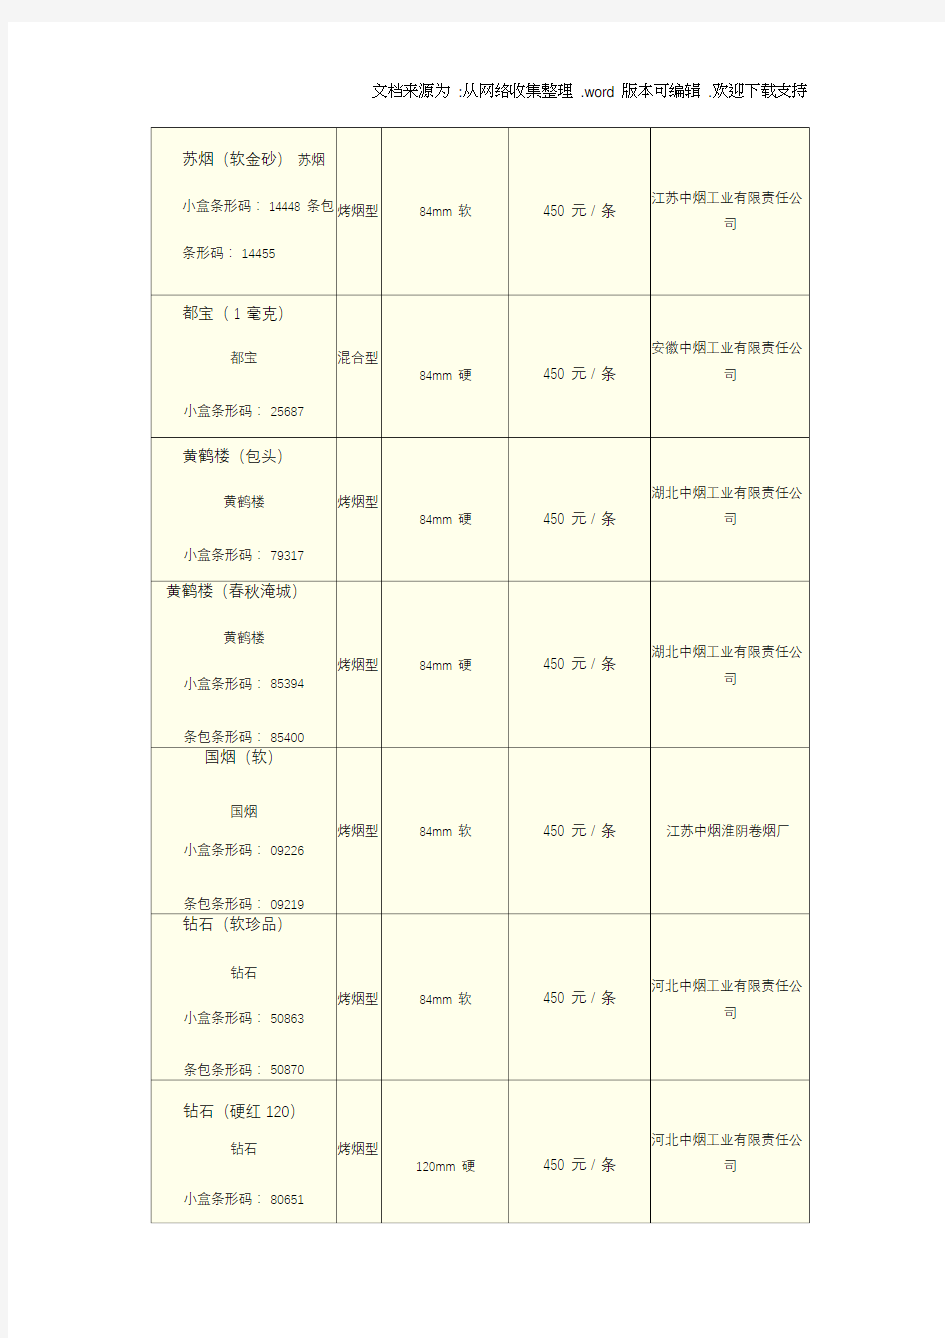 中国各类名烟价格表(300500元并附图)完整版